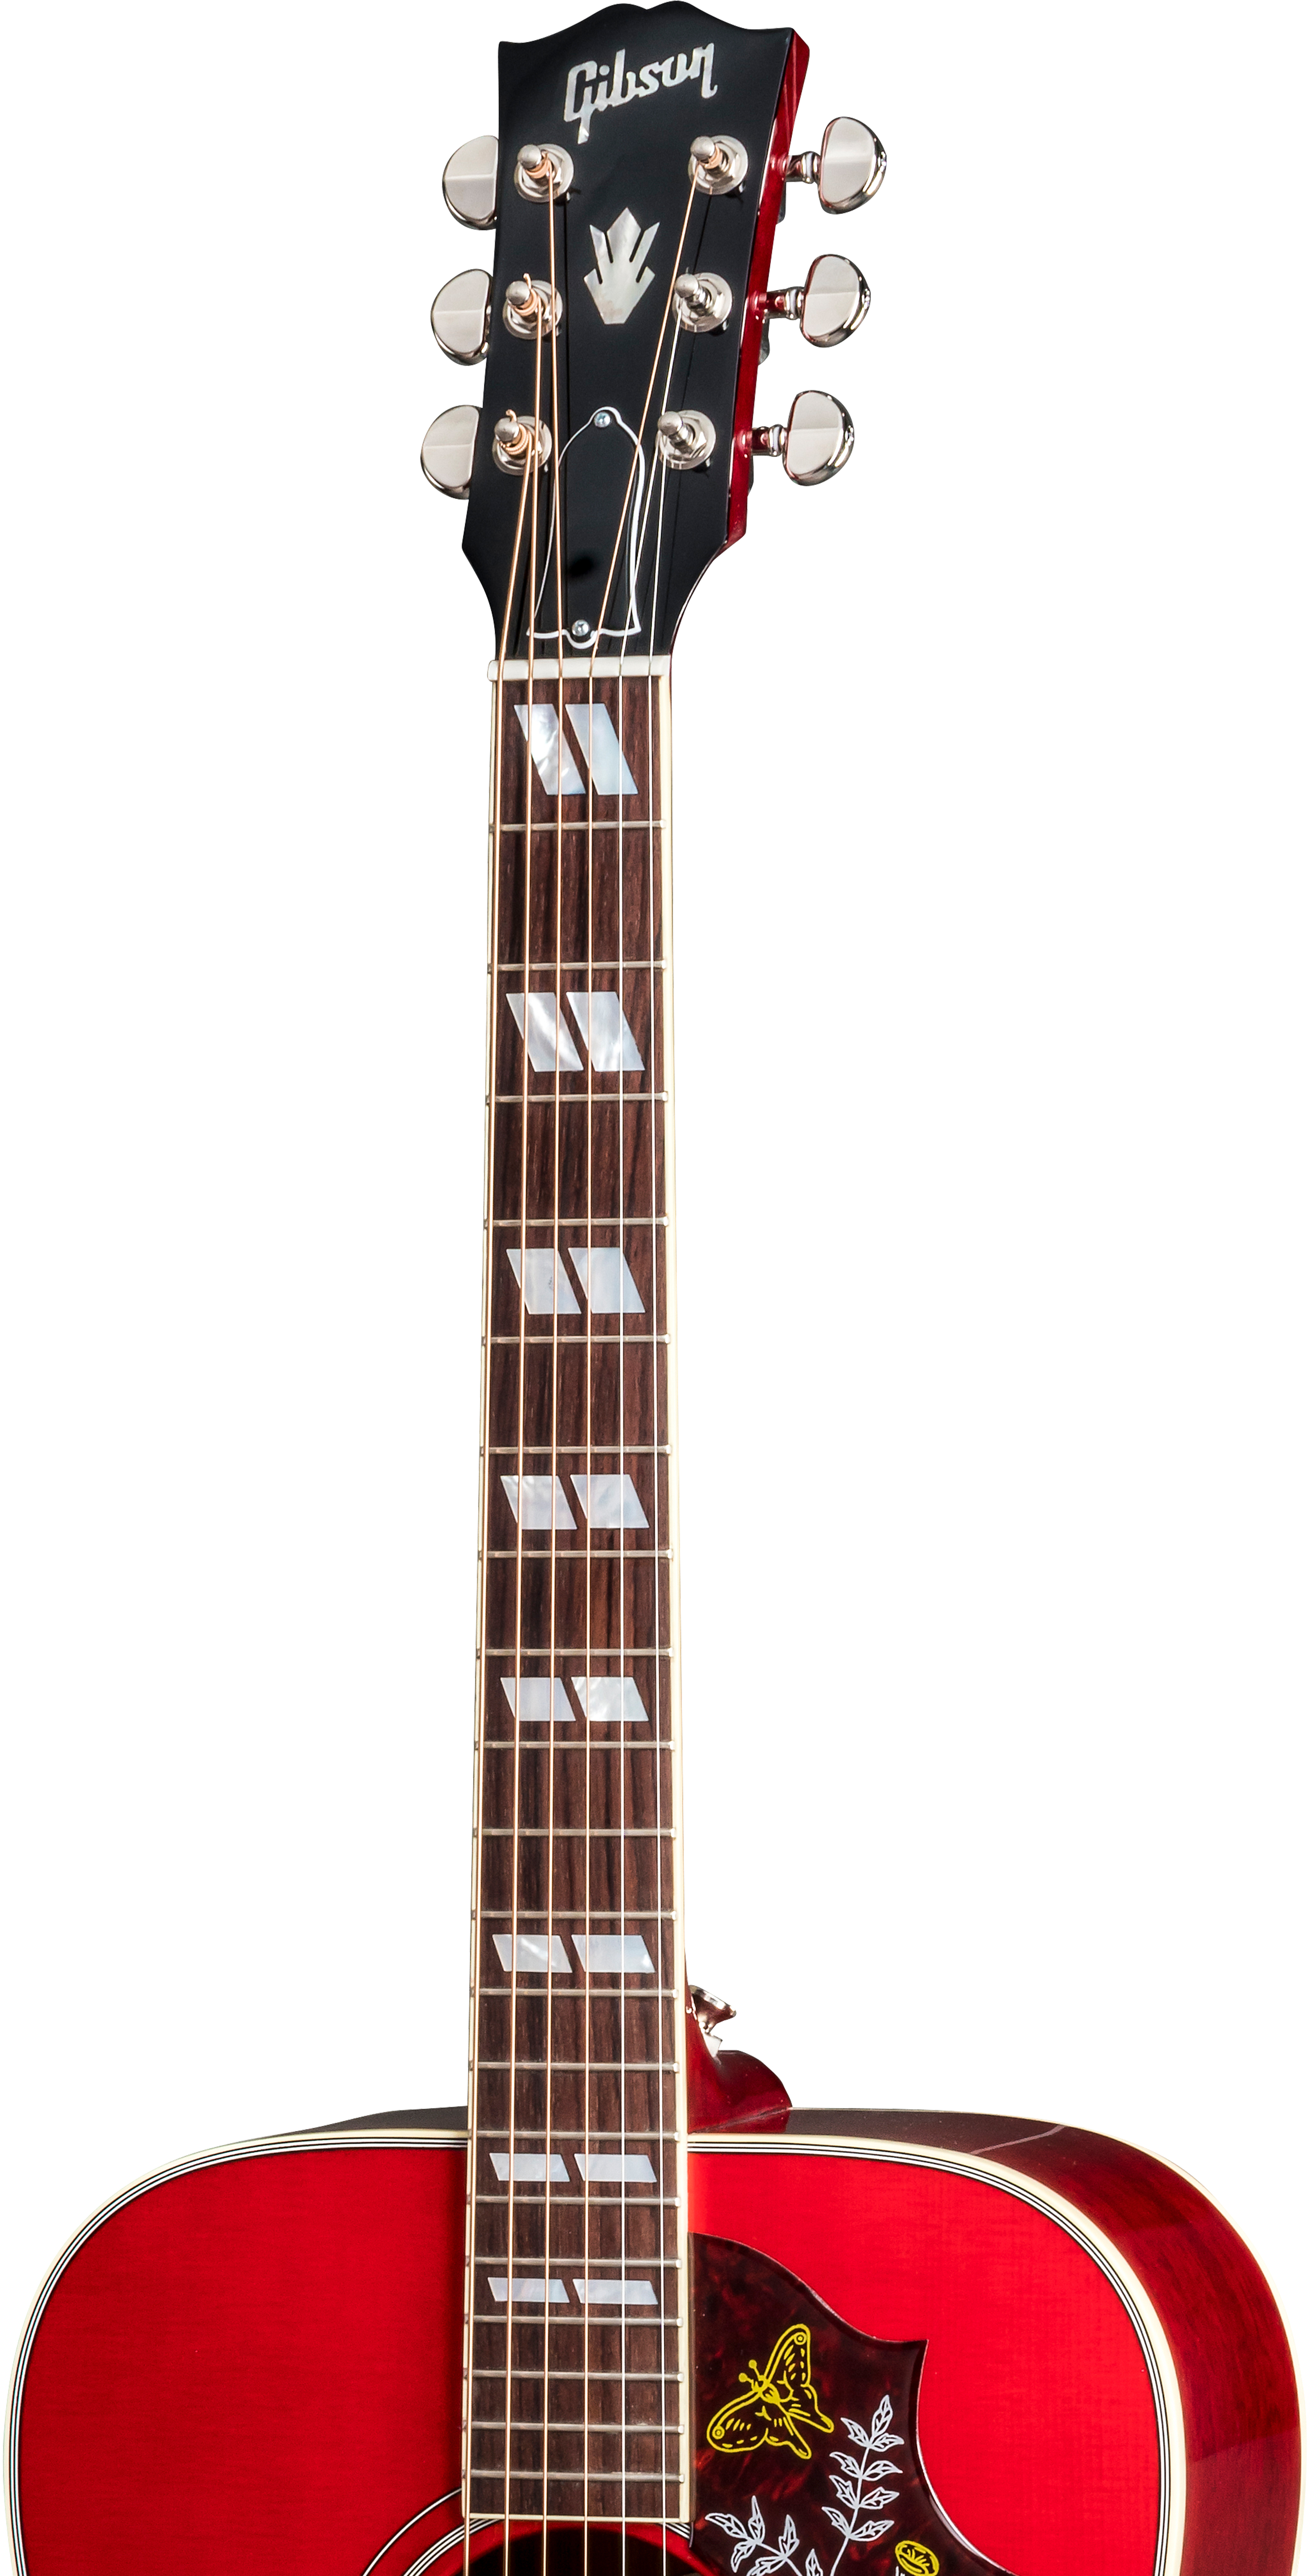 Gibson Hummingbird 2019 Dreadnought Epicea Acajou Rw - Vintage Cherry Sunburst - Guitarra acústica & electro - Variation 2